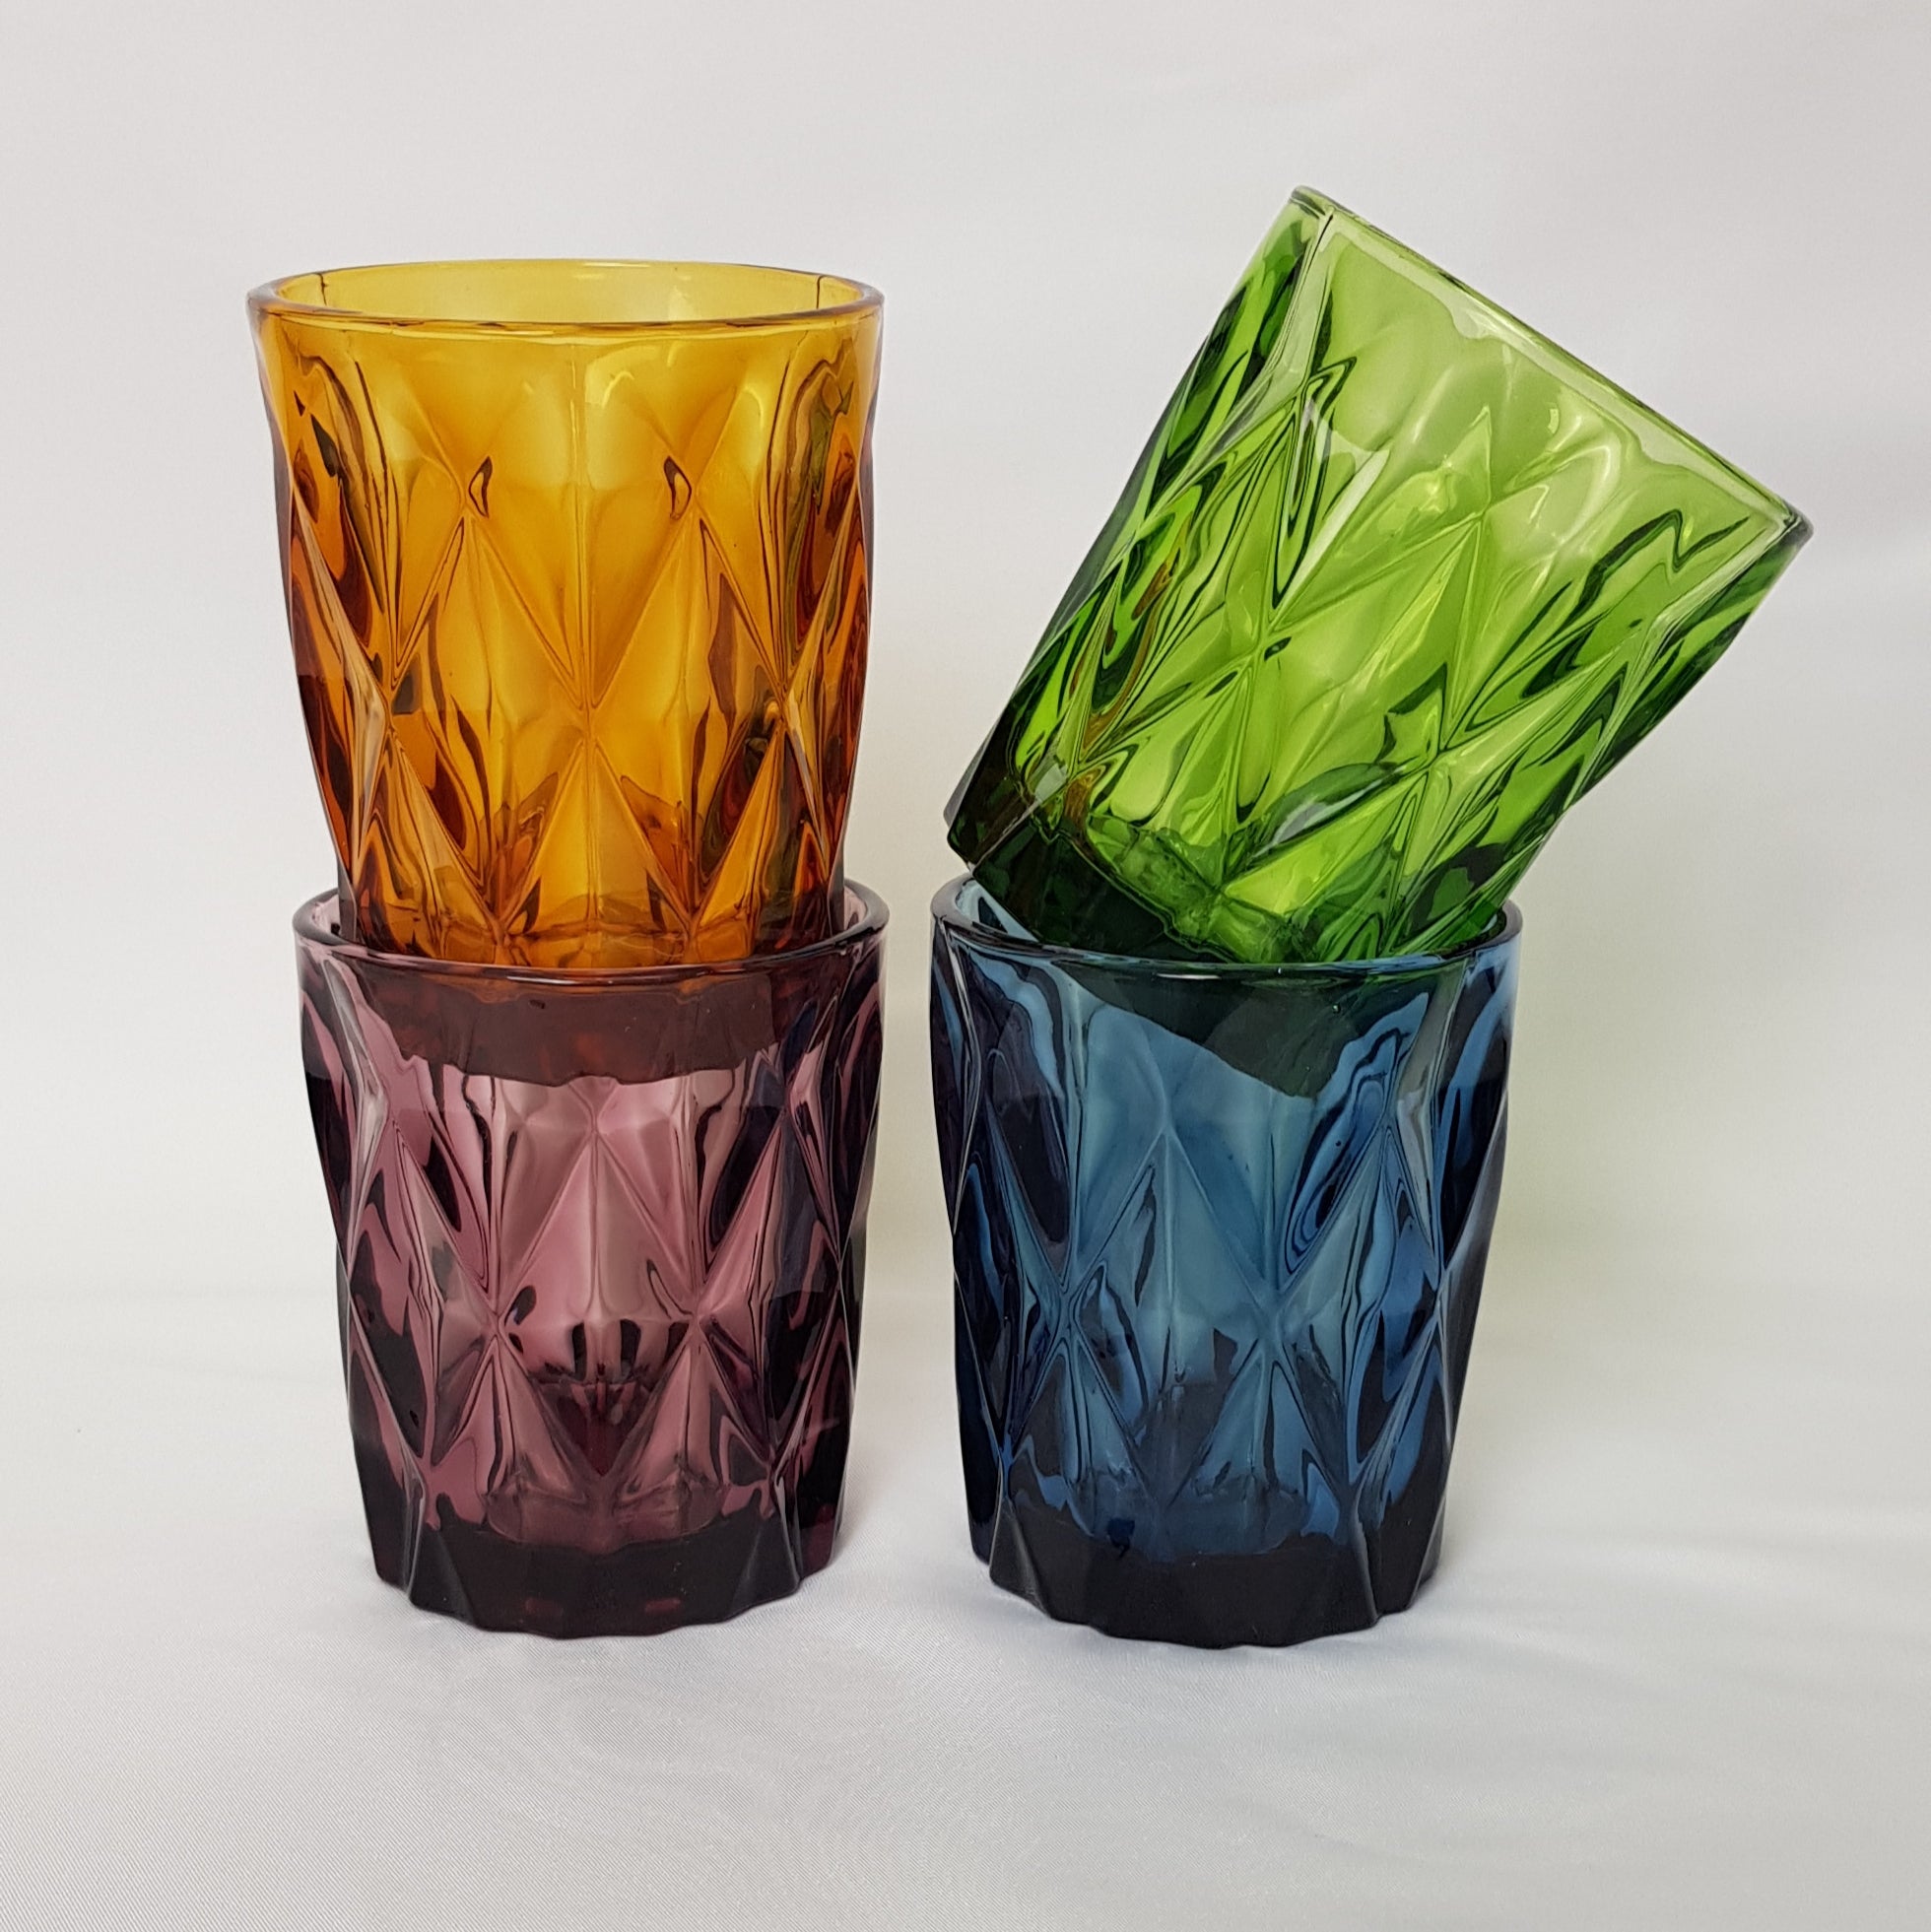 Cómo combinar los vasos de cristal de colores